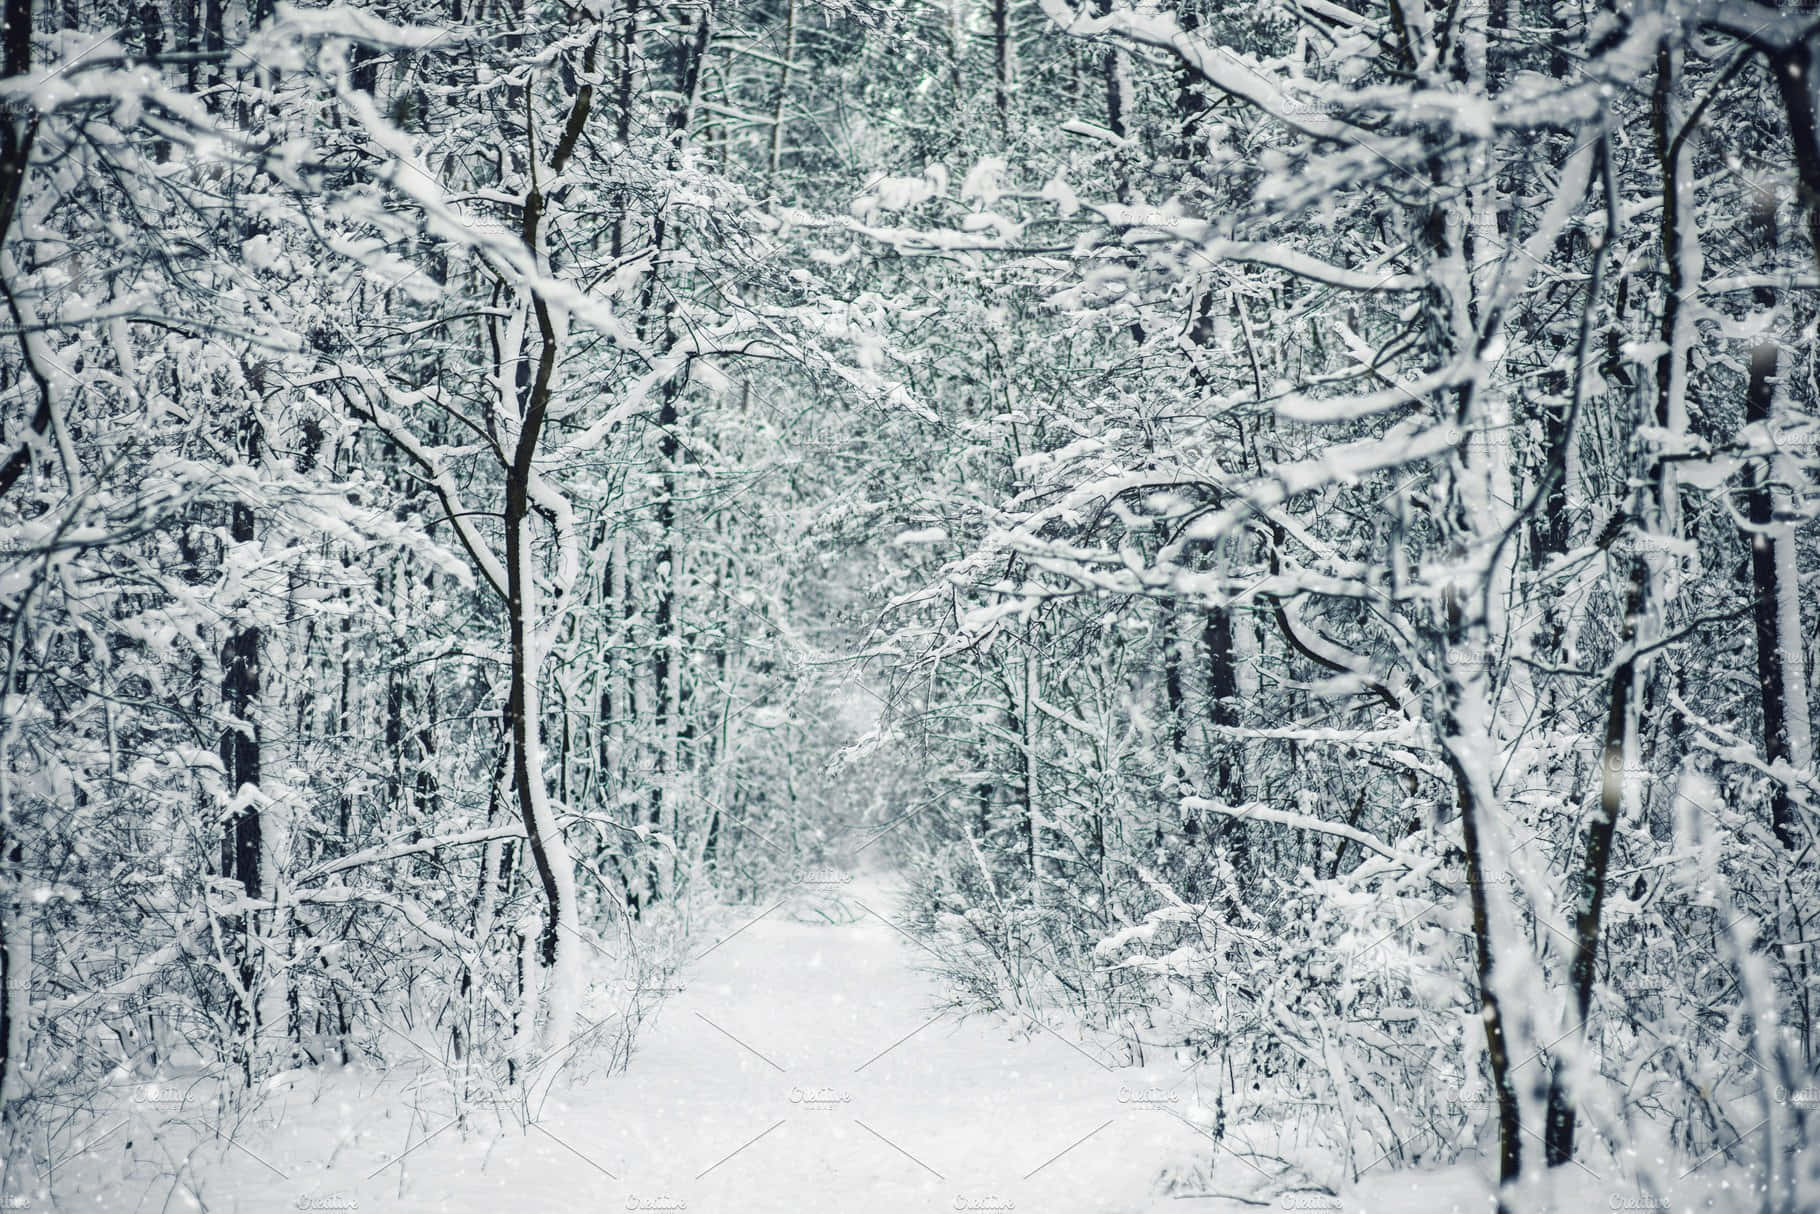 Winter Wonderland in a Snowy Forest